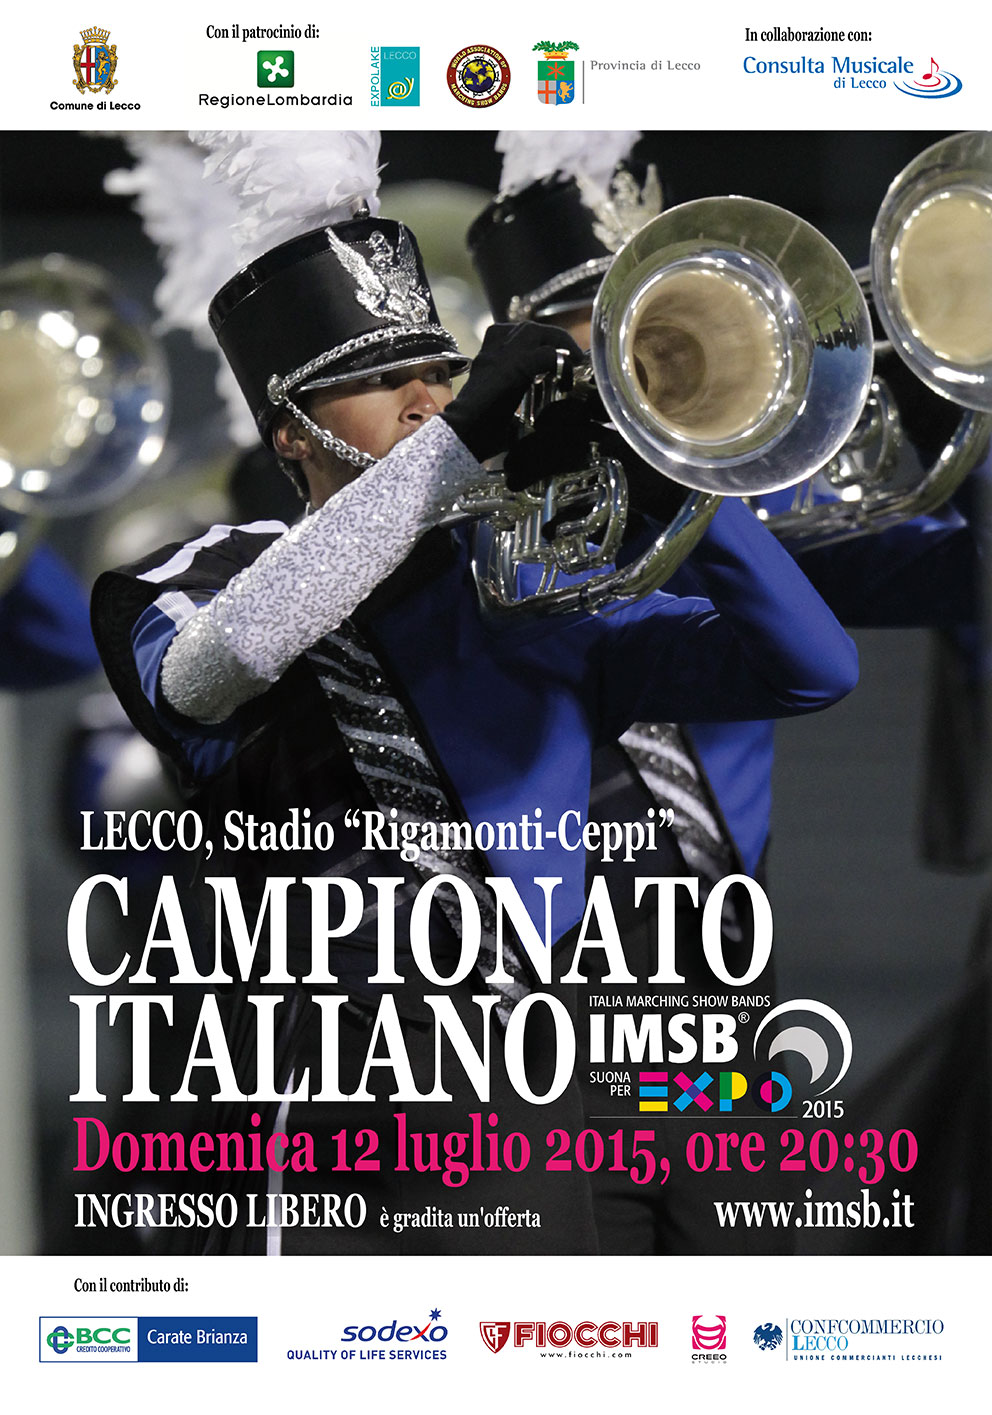 Campionato italiano 2015 - I partecipanti